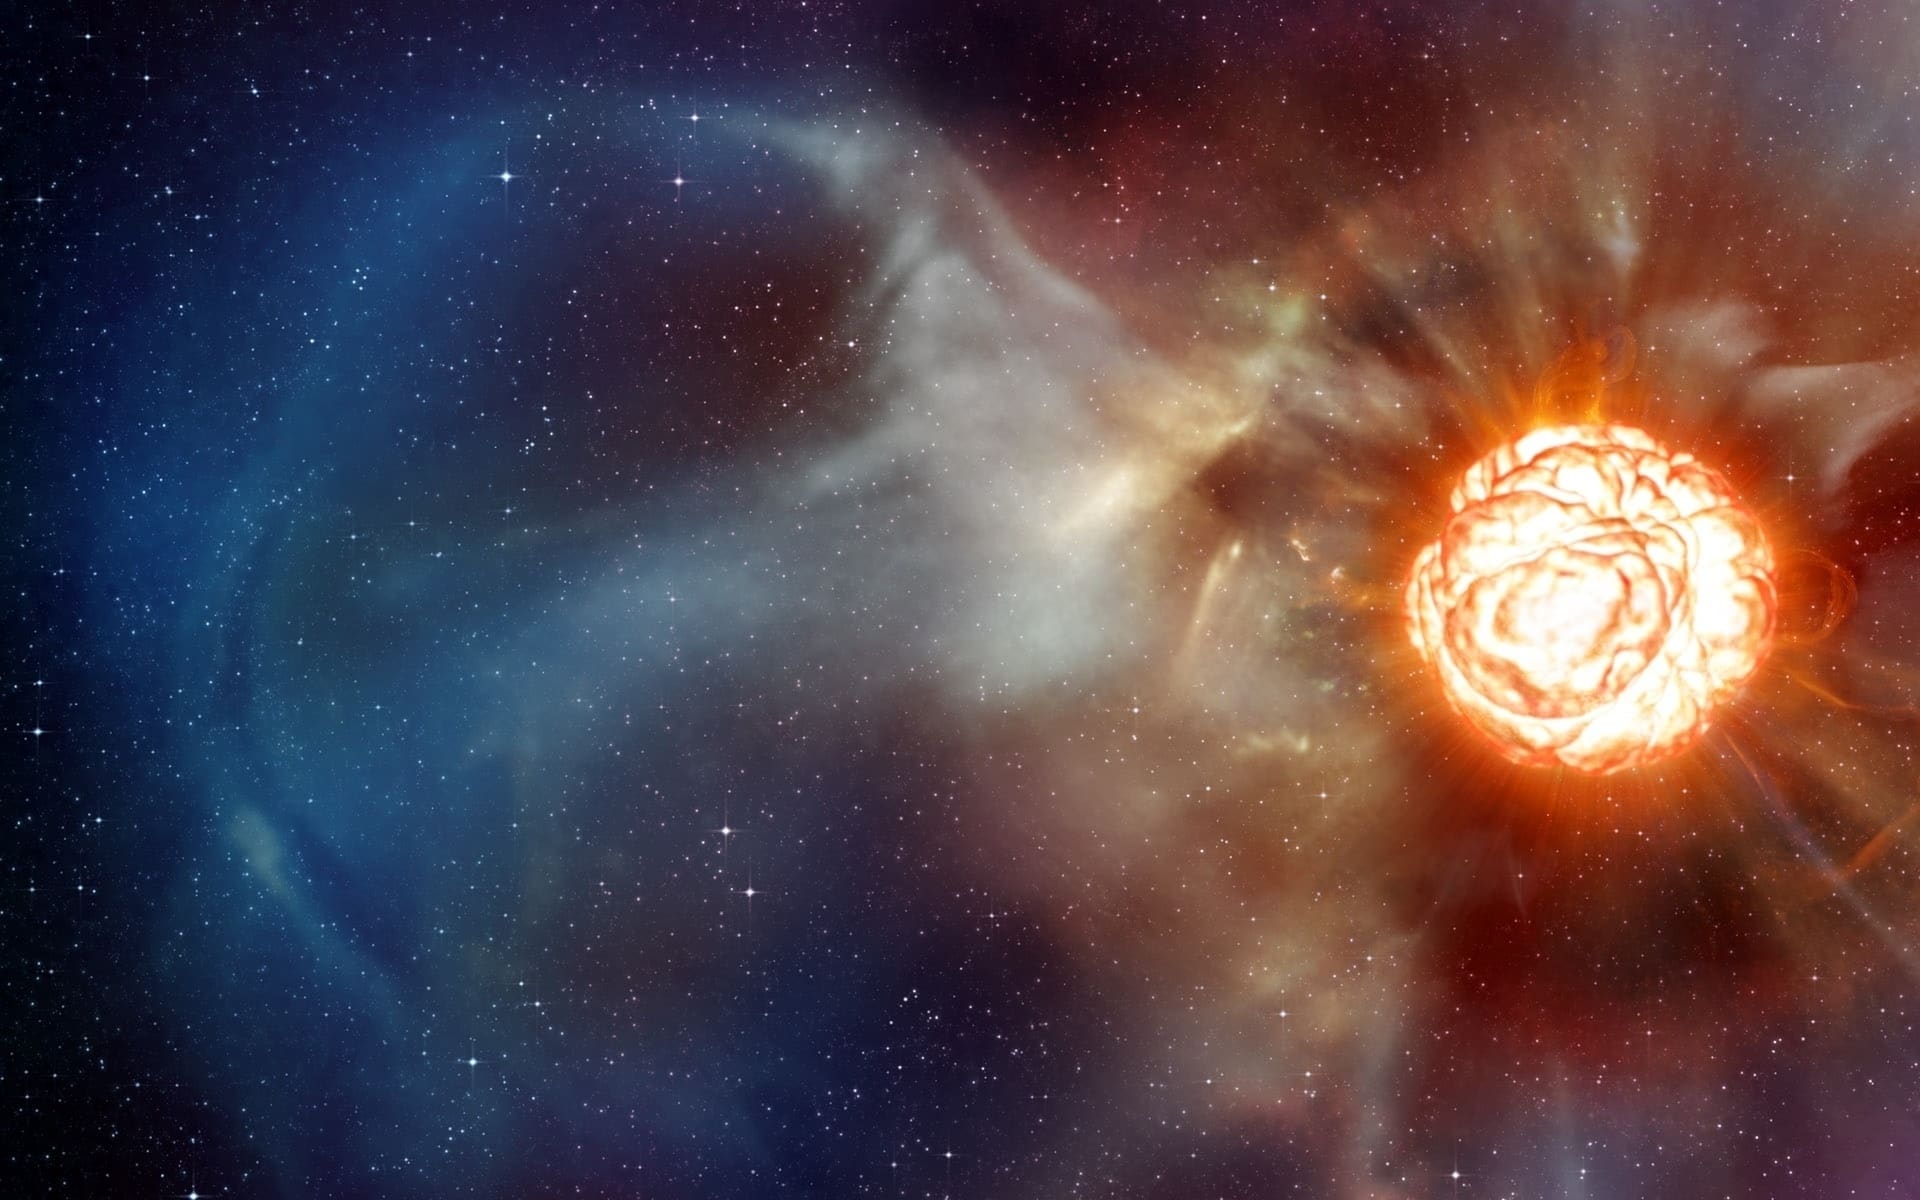 Una supernova explotó cerca de la Tierra en el pasado